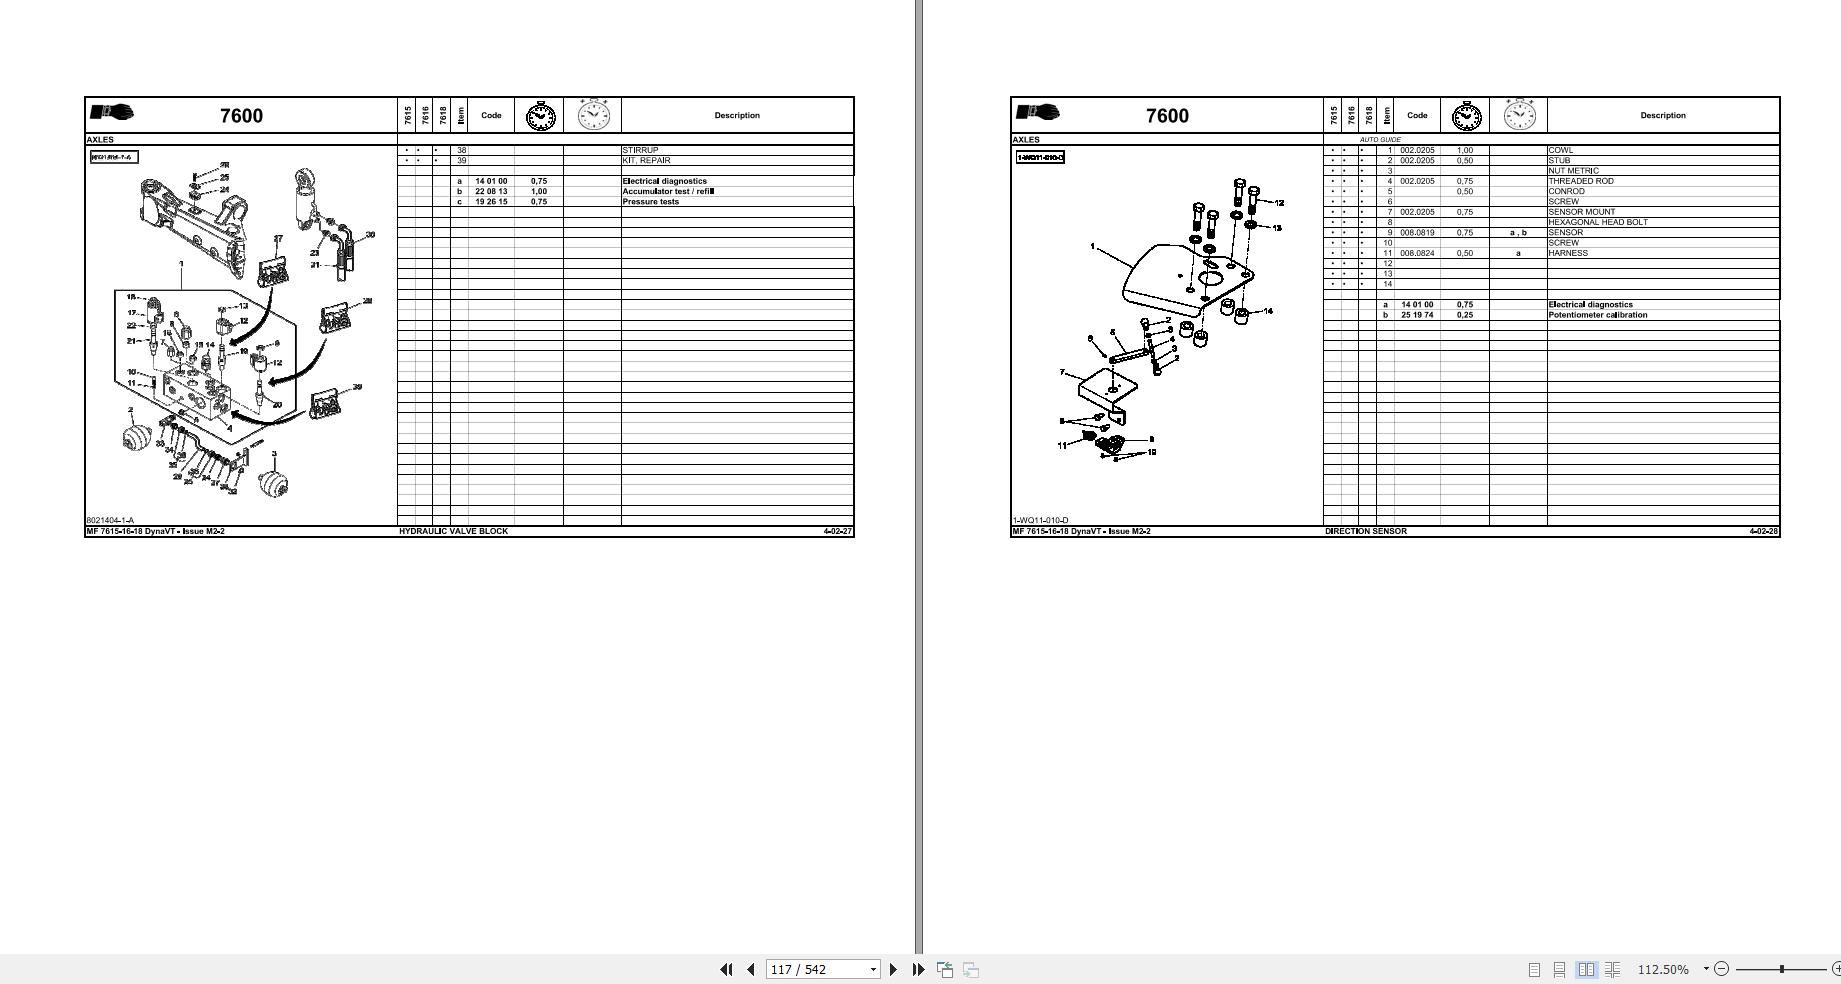 bolex repair manual pdf